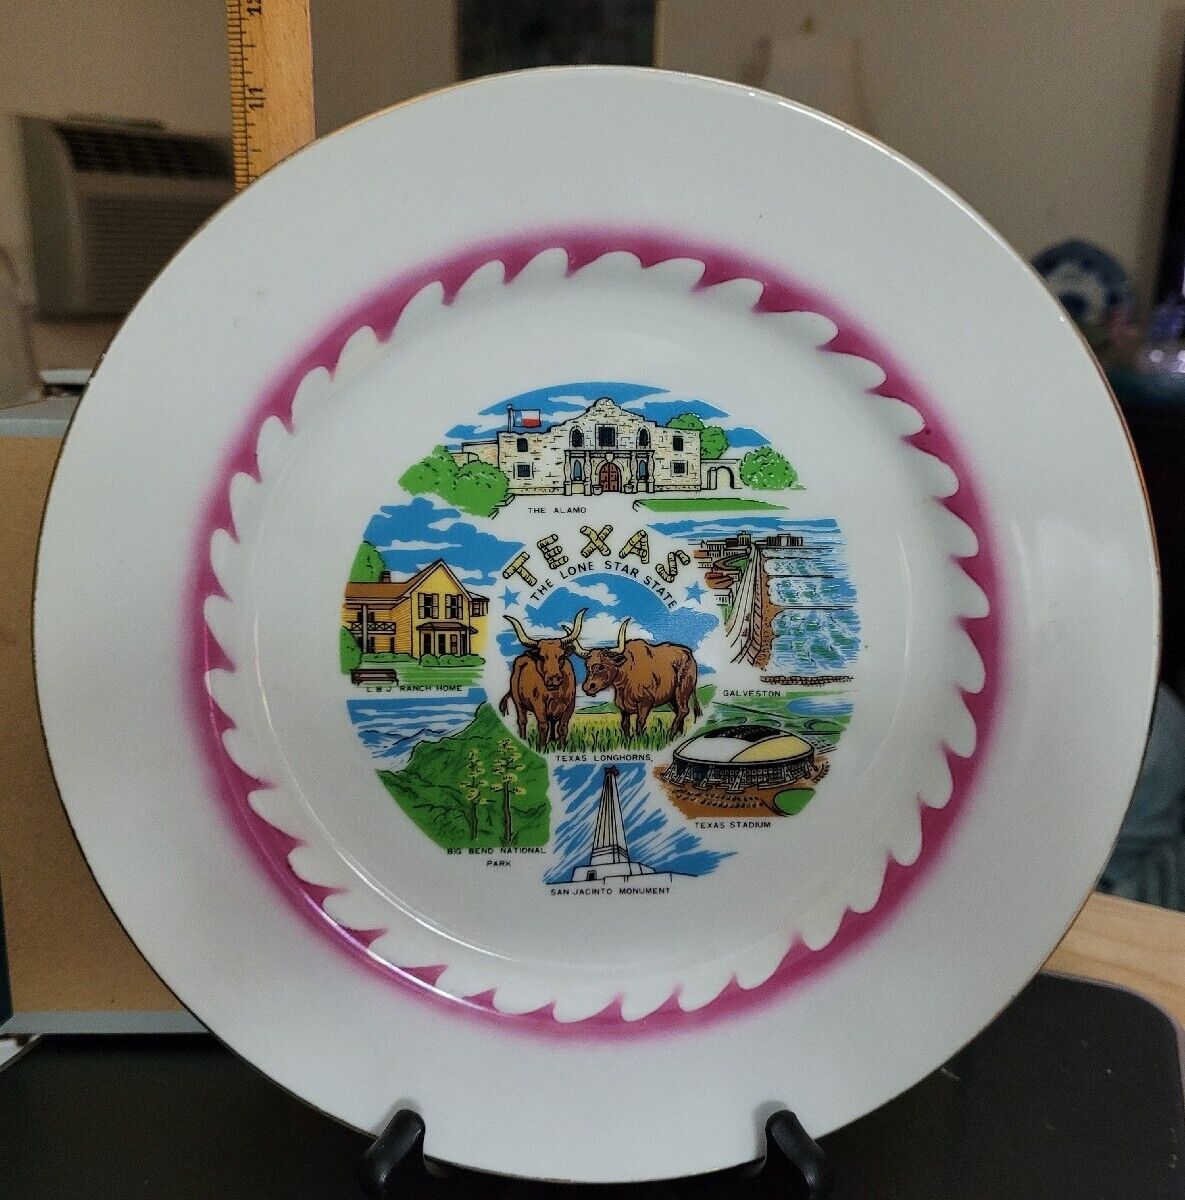 Vintage Souvenir porcelain Plate of TEXAS